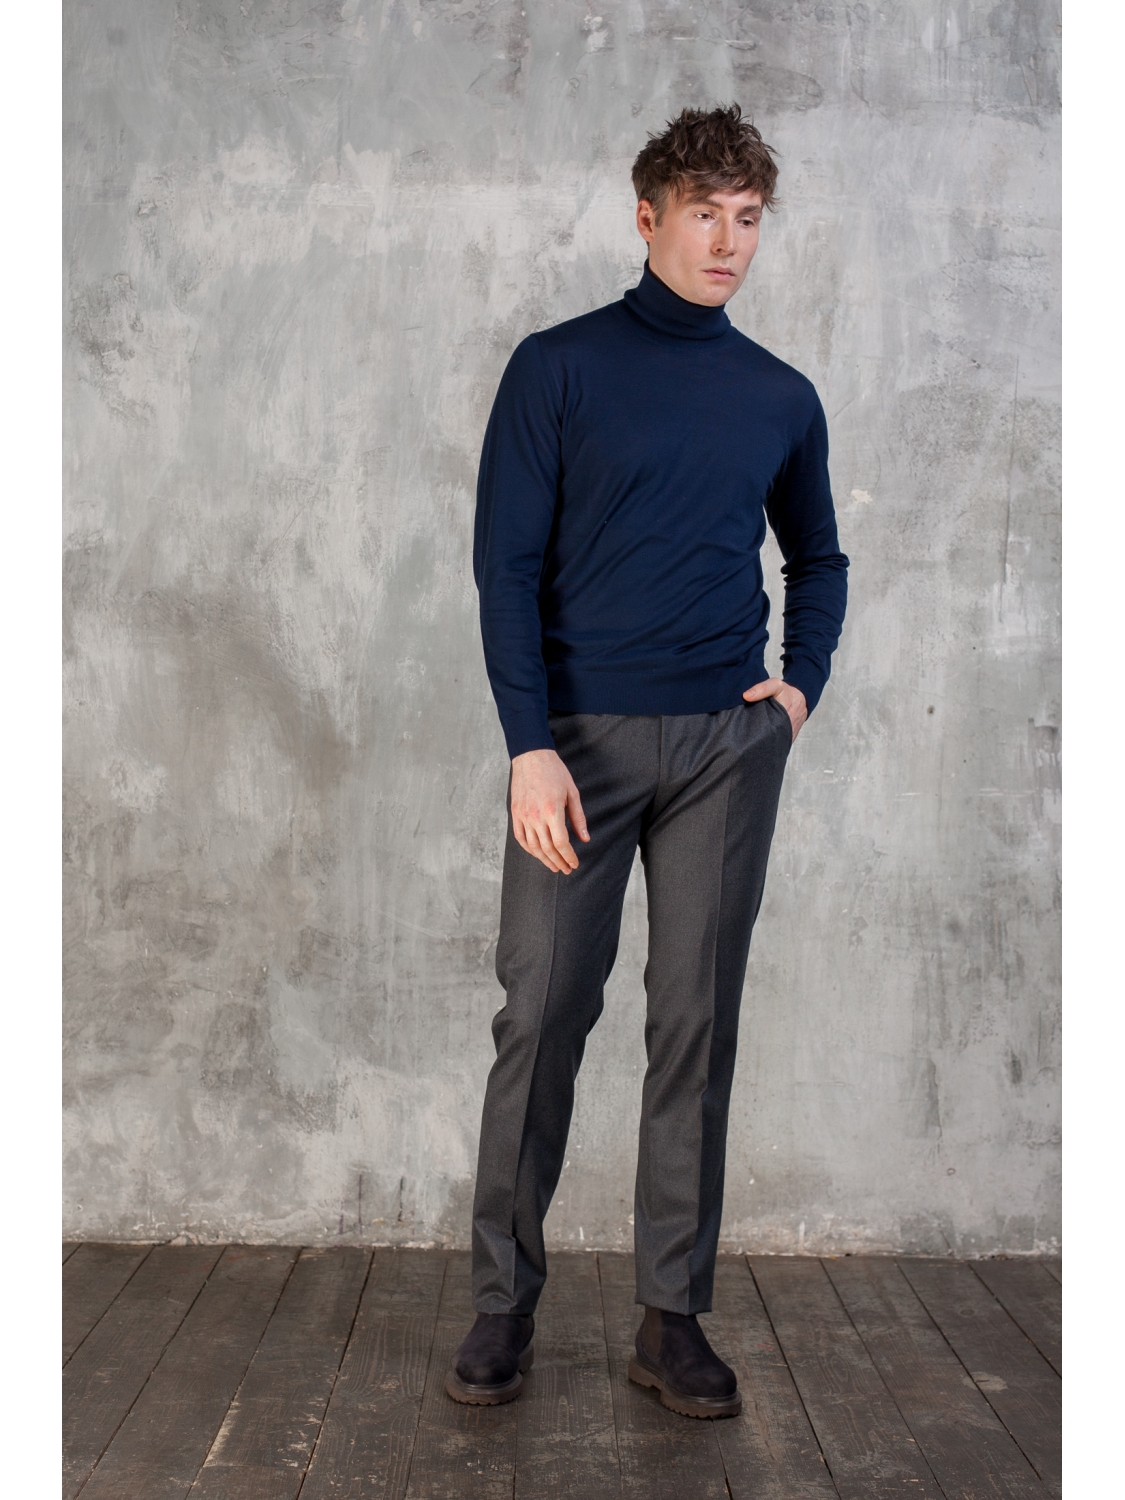 Фланелевые брюки мужские со стрелками классические шерстяные серые зауженныеGermano купить в интернет-магазине в Москве